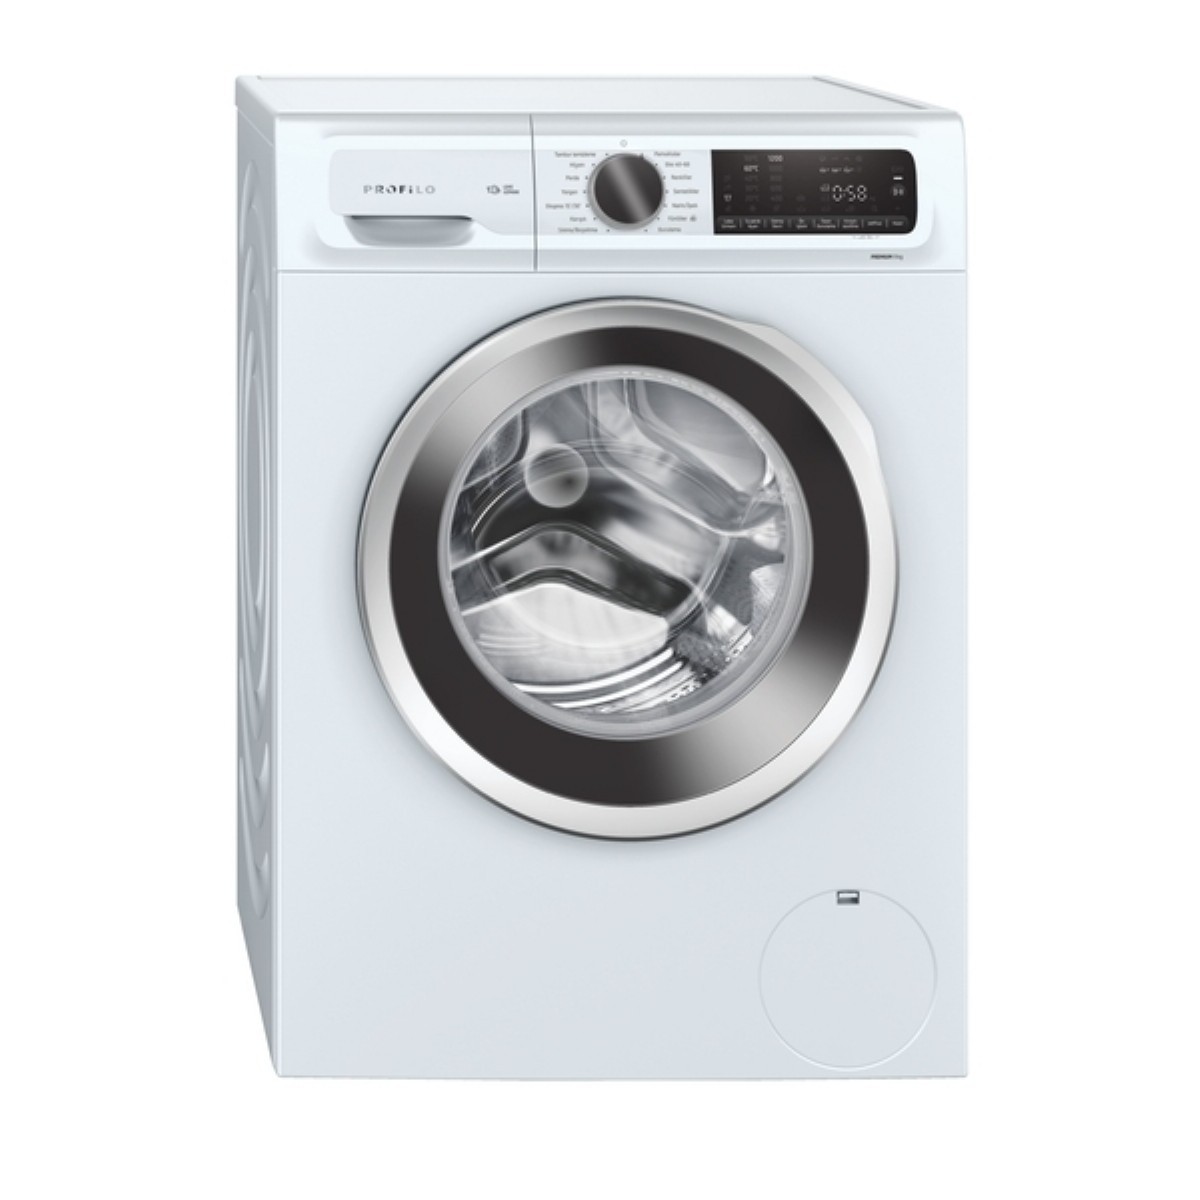 Çamaşır Makineleri | Profilo CGA242X1TR 1200 Devir 9 kg Çamaşır Makinesi | CGA242X1TR | cga242x1tr, CGA242X1TR, Profilo CGA242X1TR, Profilo 9 kg Çamaşır Makinesi, profilo 9 kilo en ucuz çamaşır makinesi | 